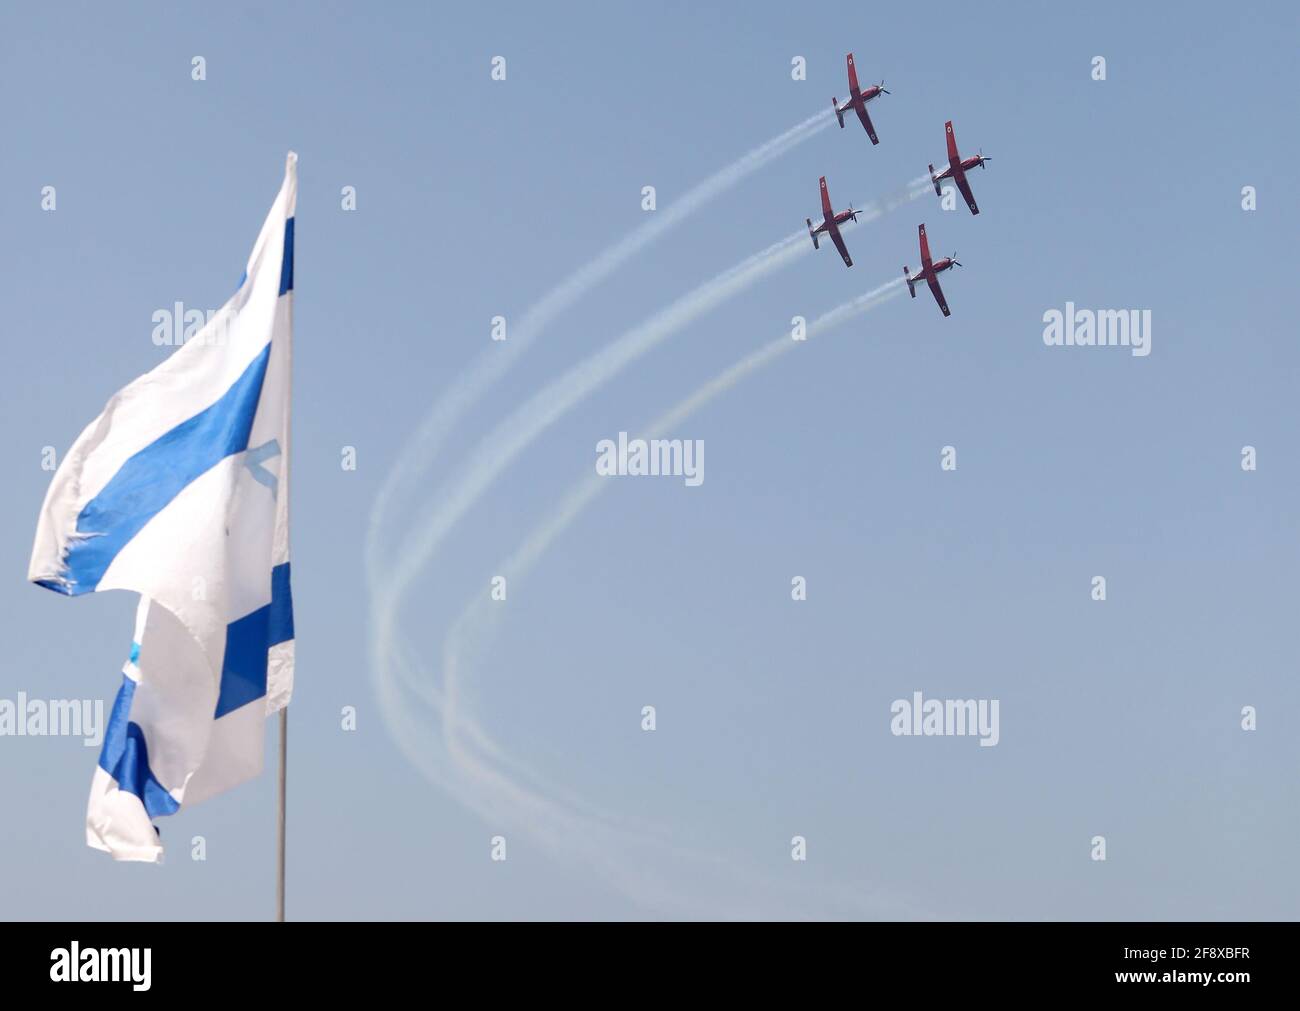 TEL AVIV, le 15 avril 2021 des avions se présentent dans un spectacle aérien lors des 73e célébrations de l'indépendance d'Israël à tel Aviv, Israël, le 15 avril 2021. (Gideon Markowicz/JINI via Xinhua) Credit: Xinhua/Alay Live News Banque D'Images